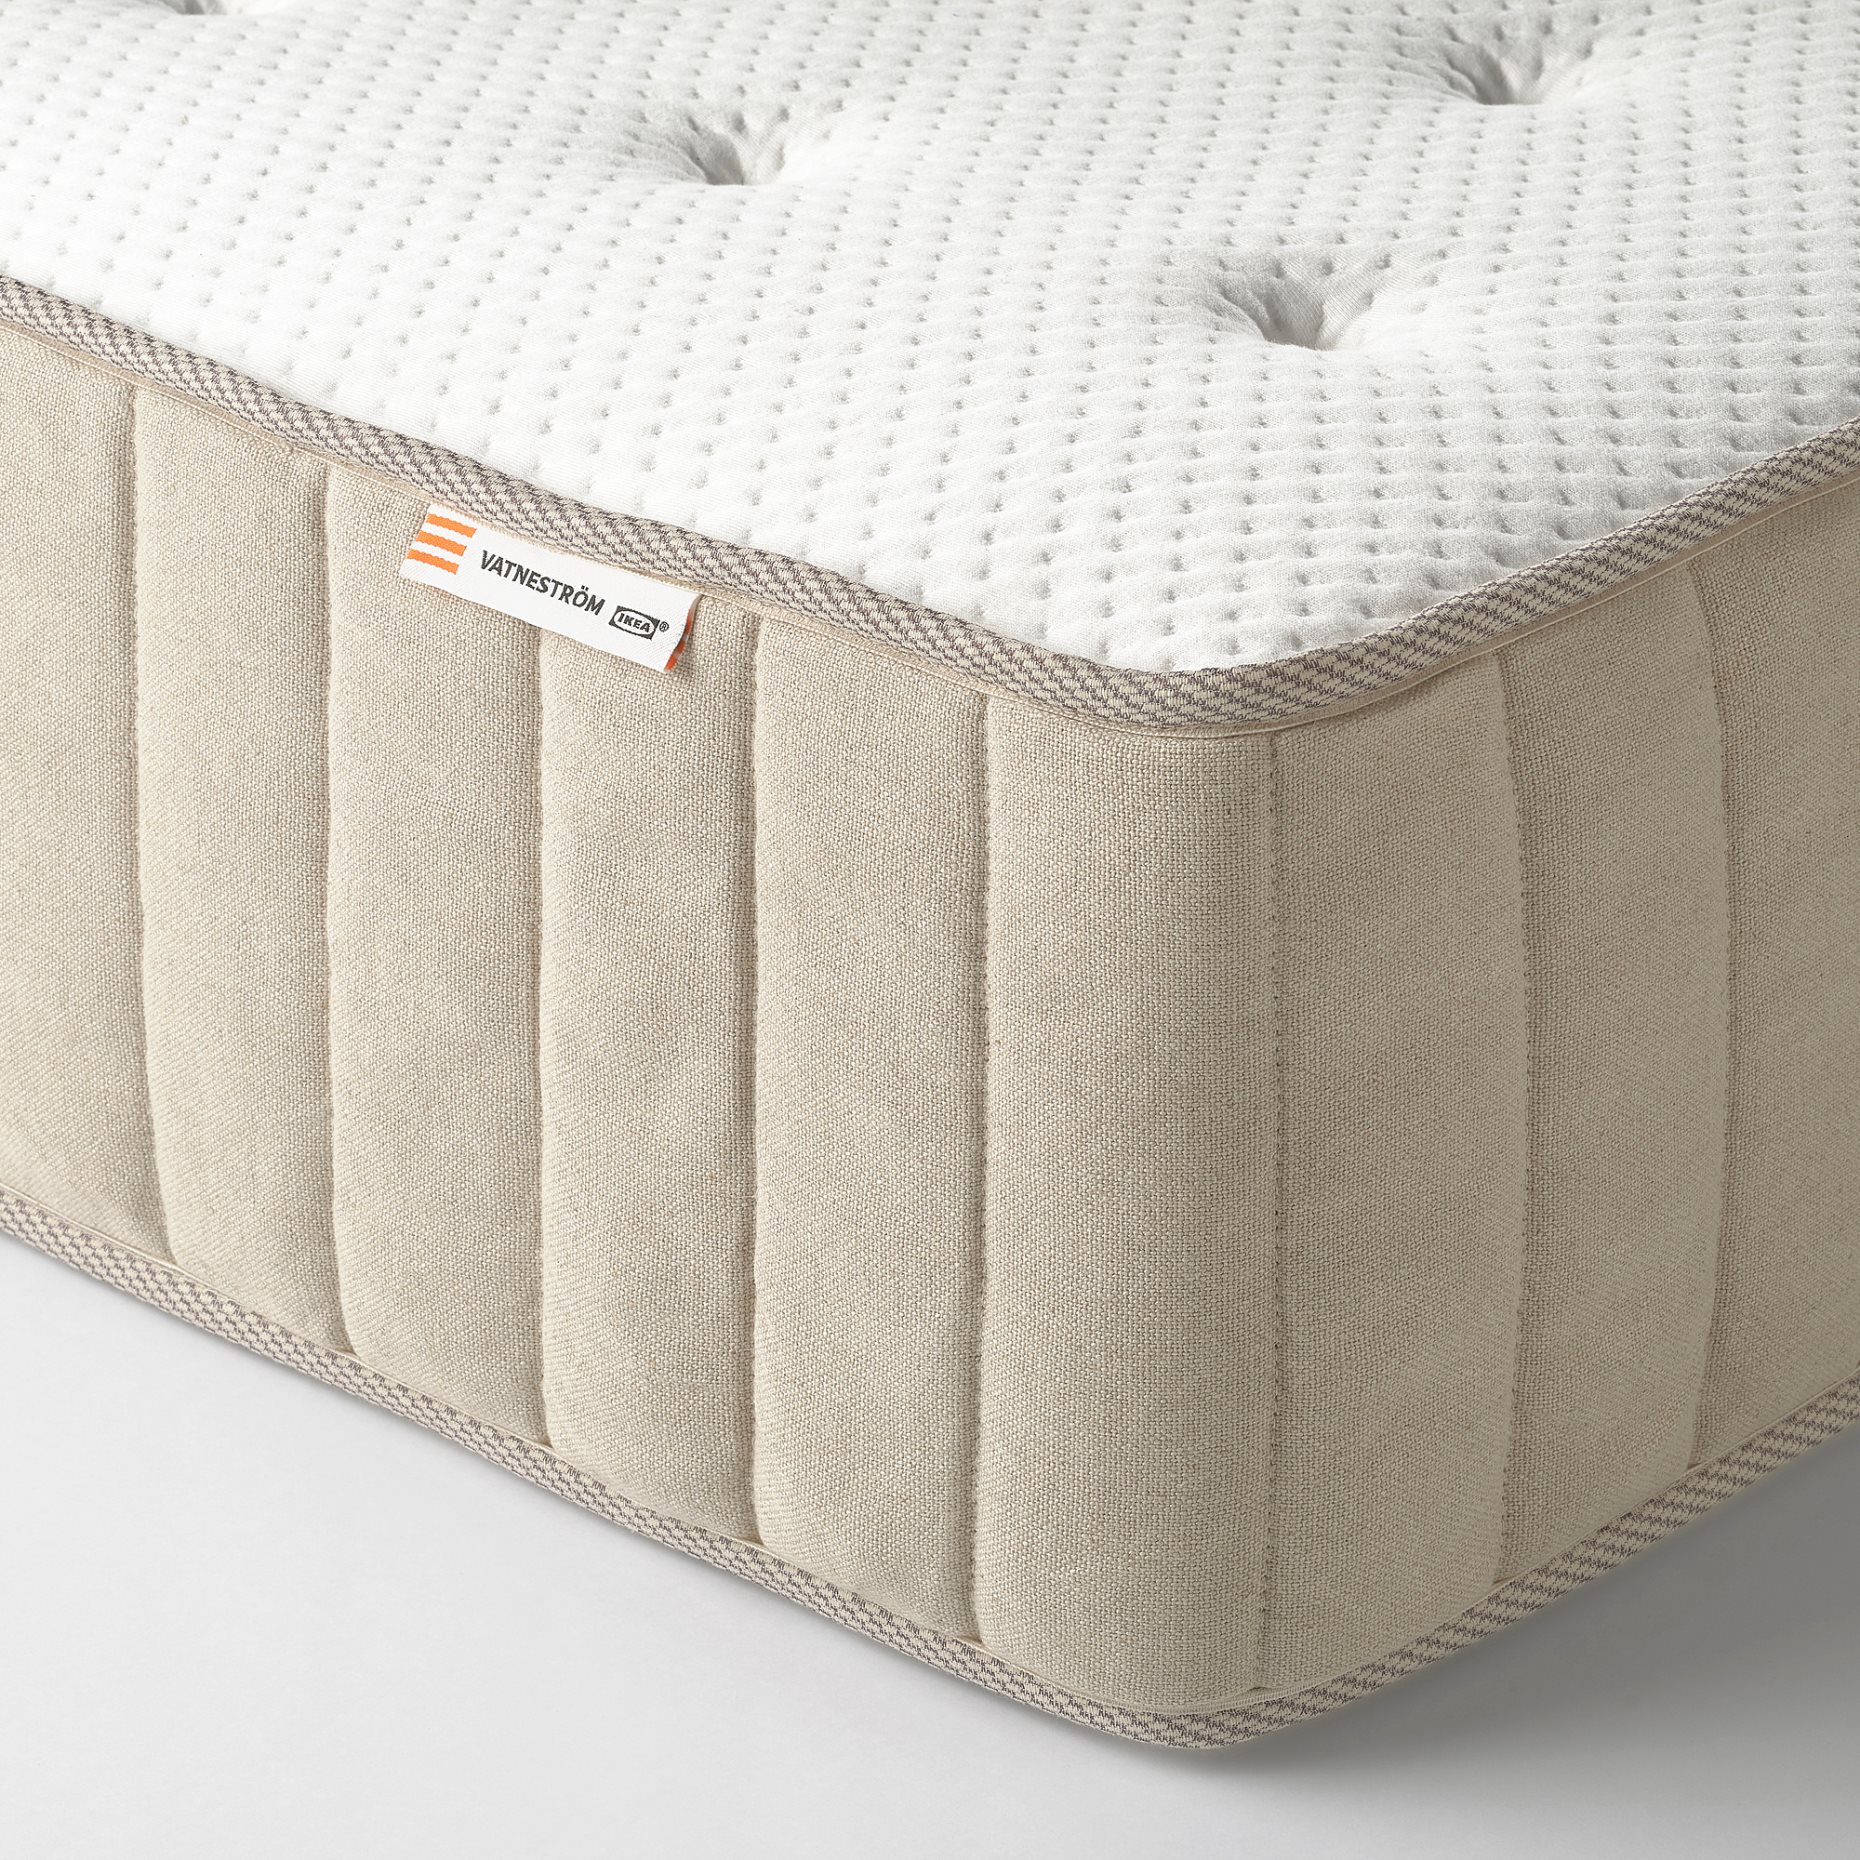 VATNESTRÖM, pocket sprung mattress, firm 140x200 cm, 104.763.99